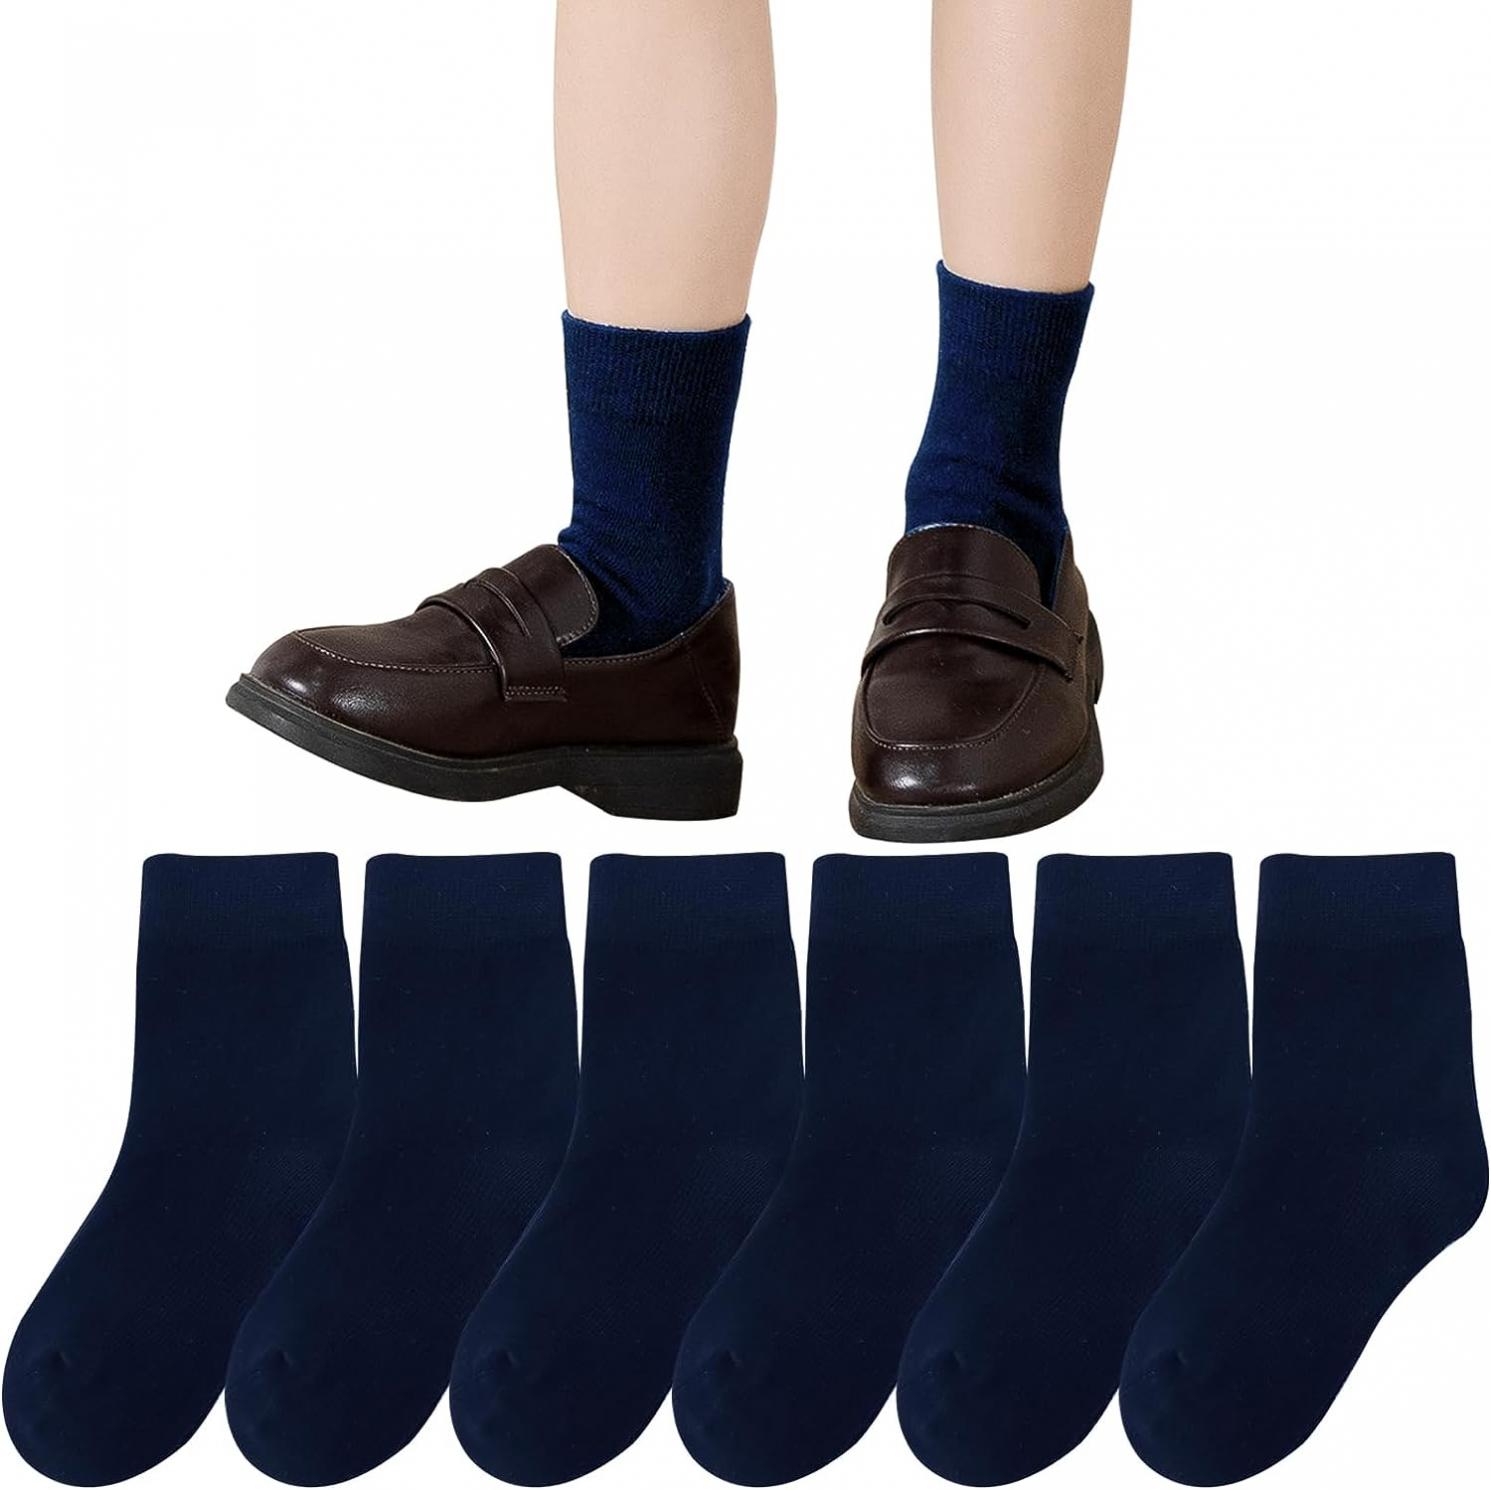 Mini angel Boys Girls Crew Socks Seamless Cotton Socks Kids School Socks Dress Socks 6 Pairs